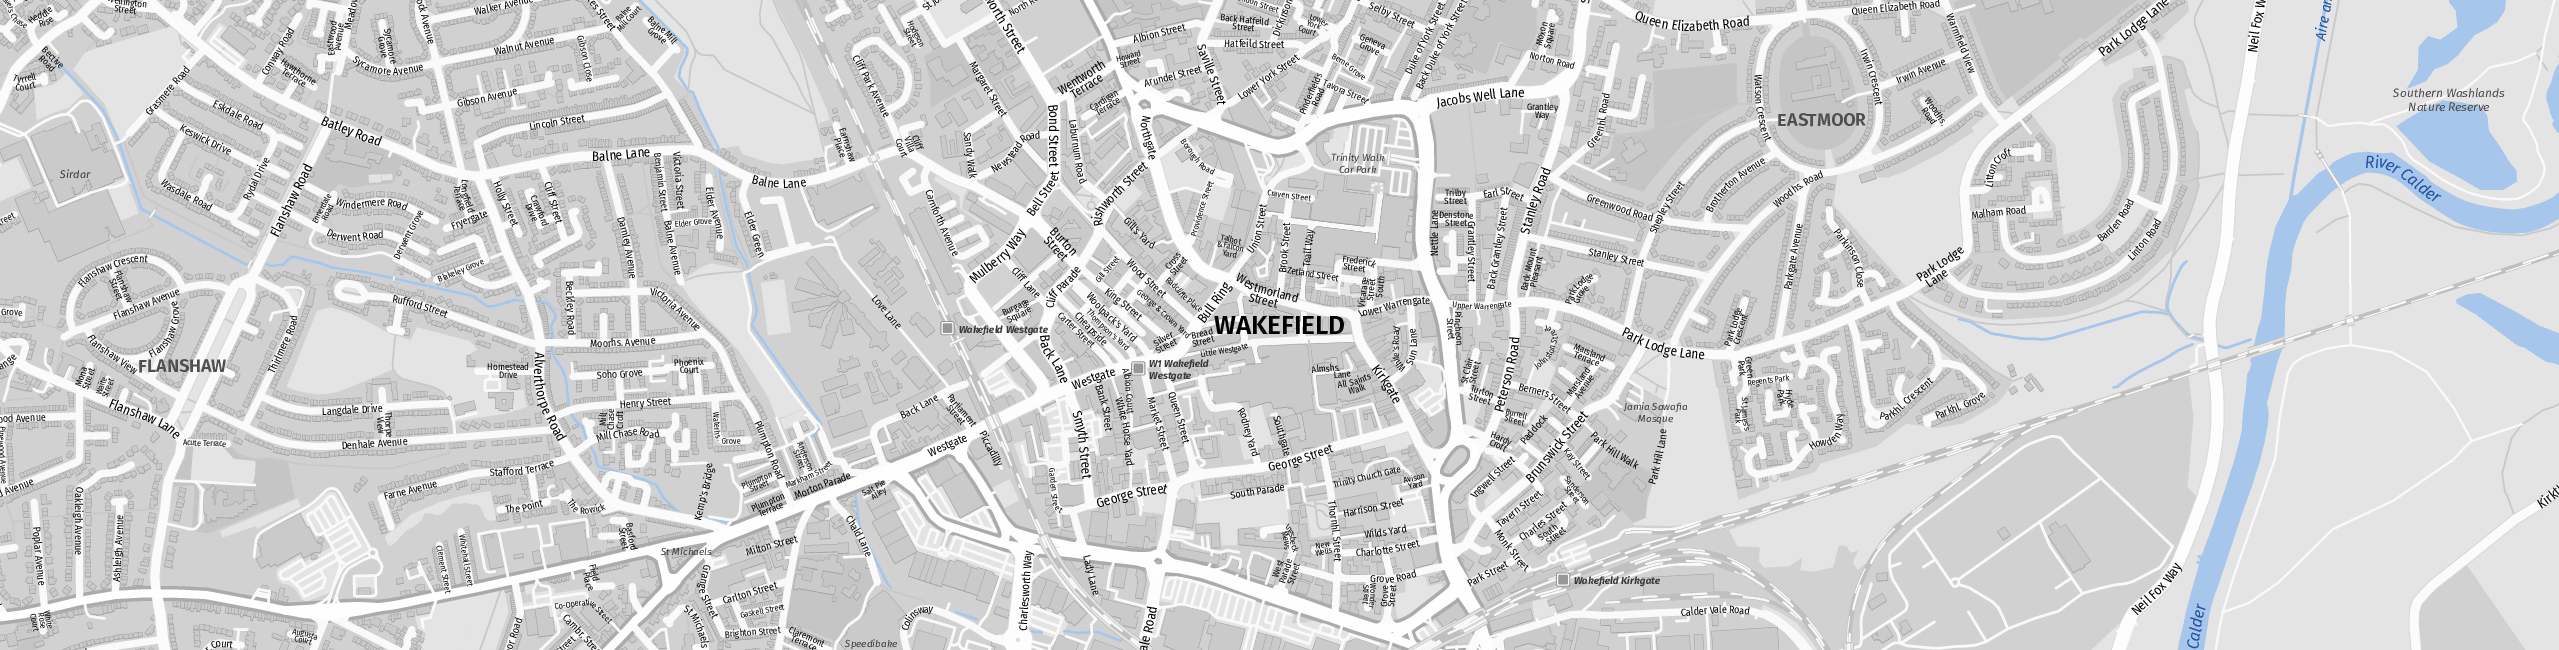 Stadtplan Wakefield zum Downloaden.